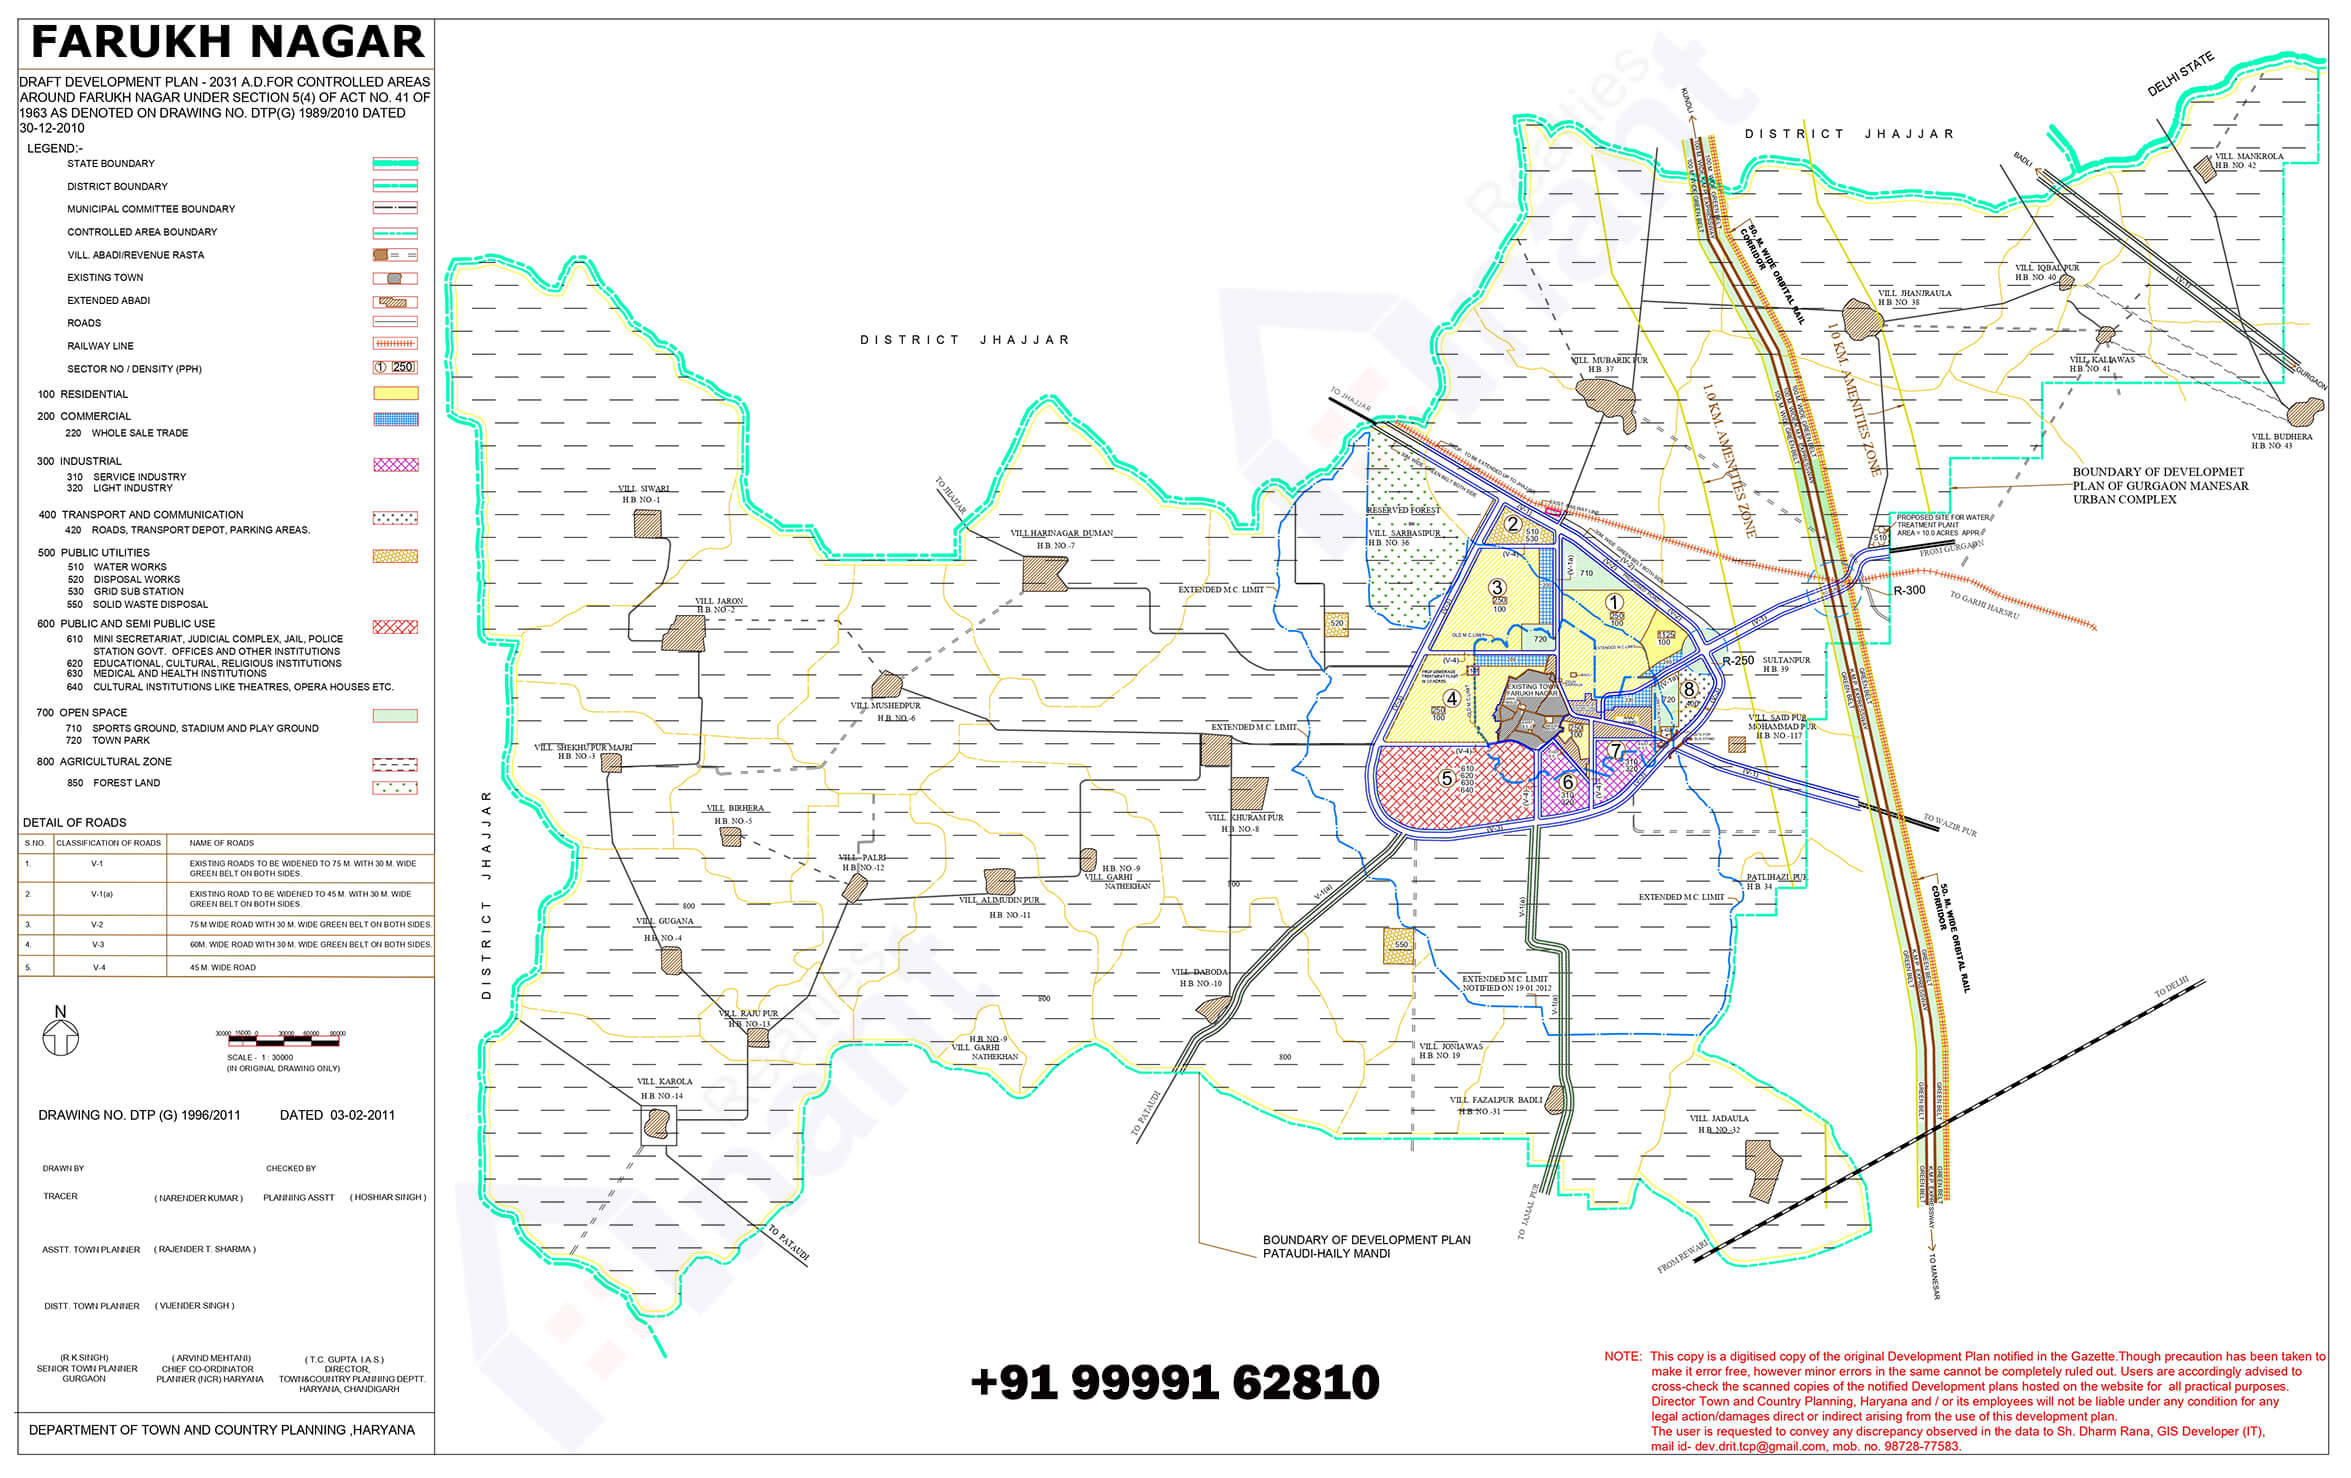 Gurgaon-FARUKH NAGAR MASTER PLAN 2031